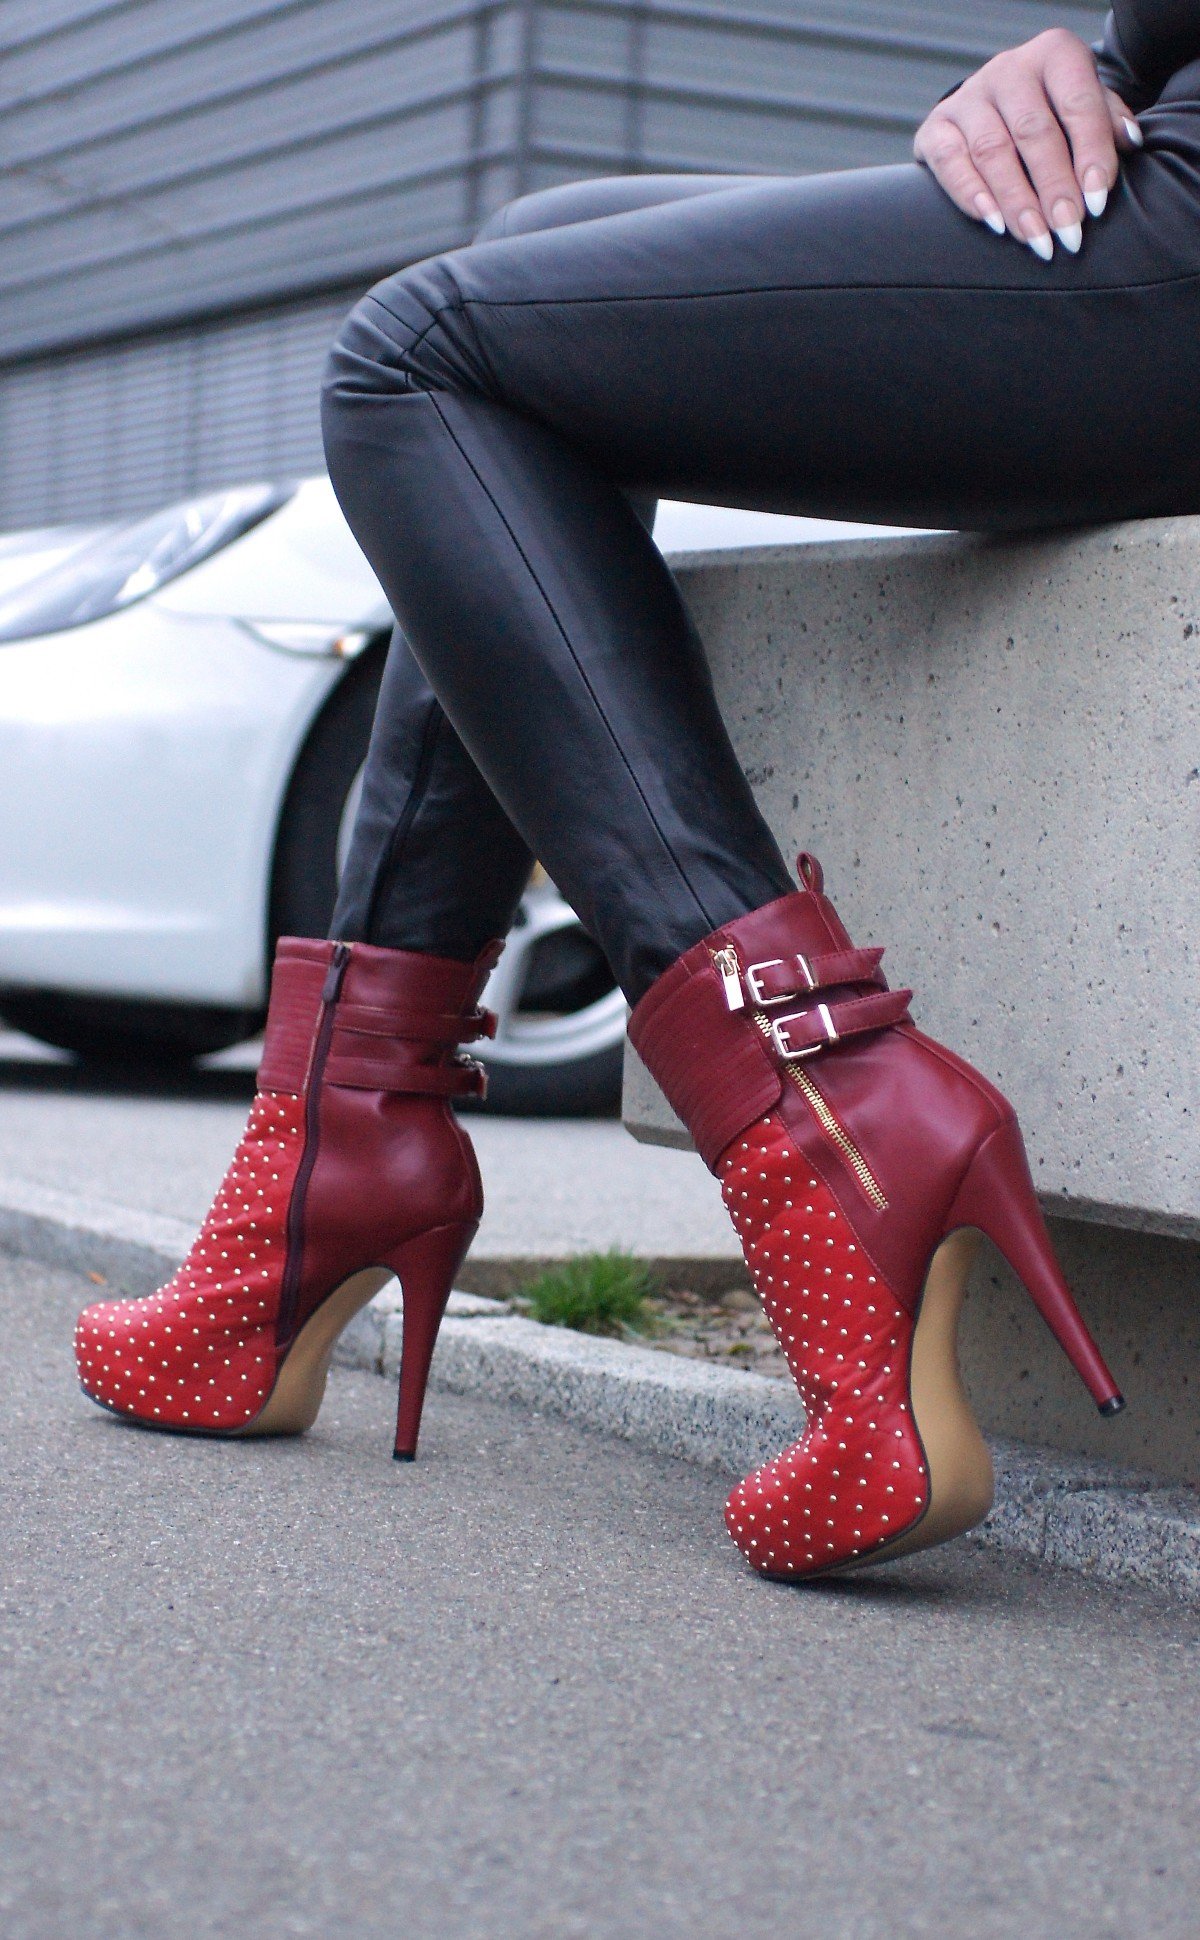 Botas con tacón de color rojo. | Foto: Pxhere